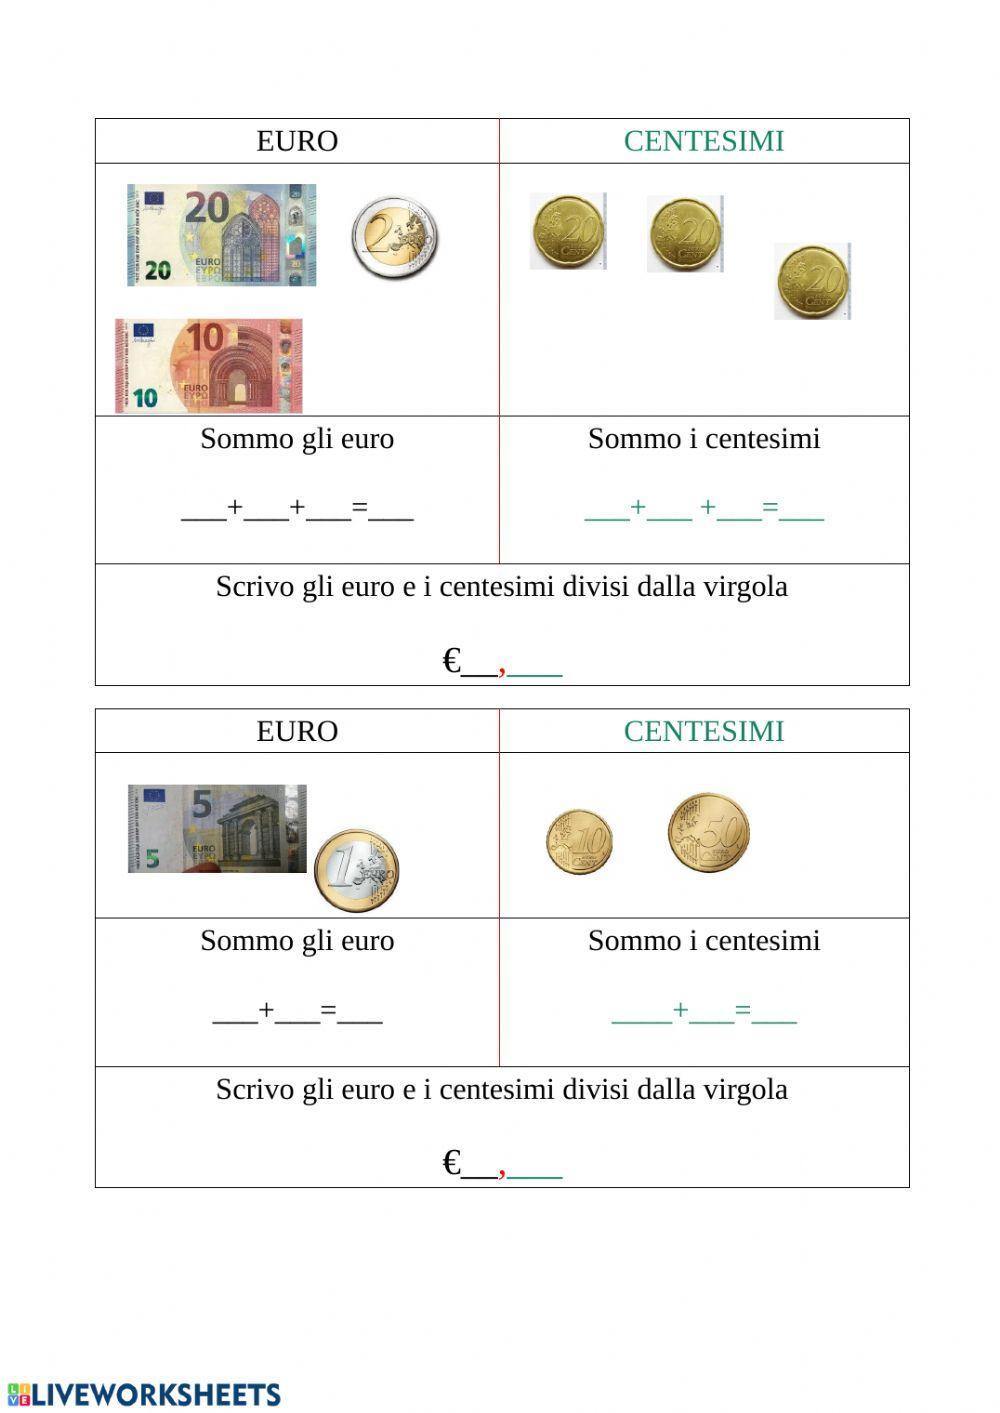 Conta euro e centesimi